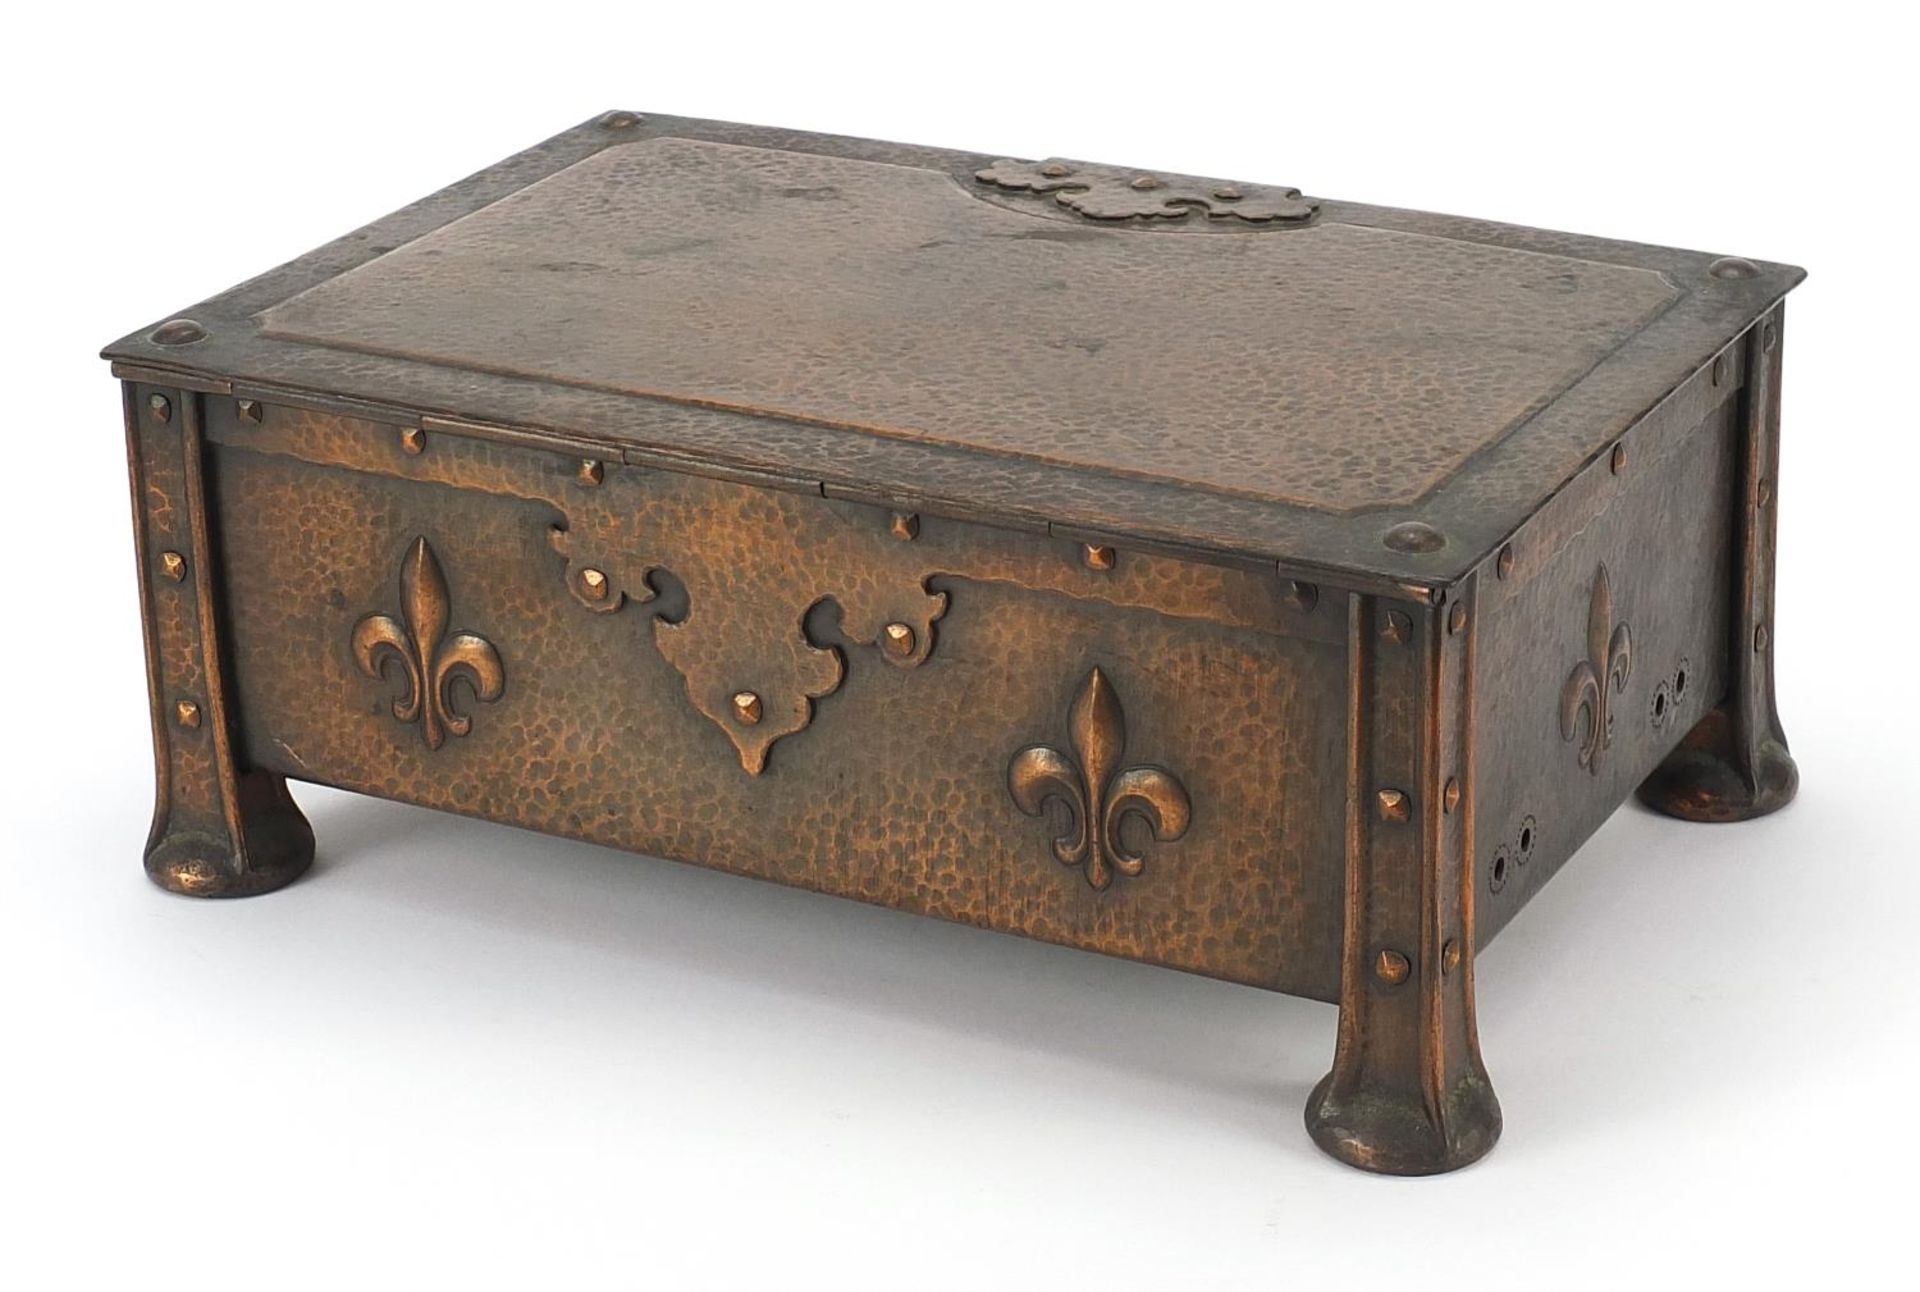 James Smithies of Wilmslow, Arts & Crafts copper casket with fleur de Lys, 10.5cm H x 26cm W x